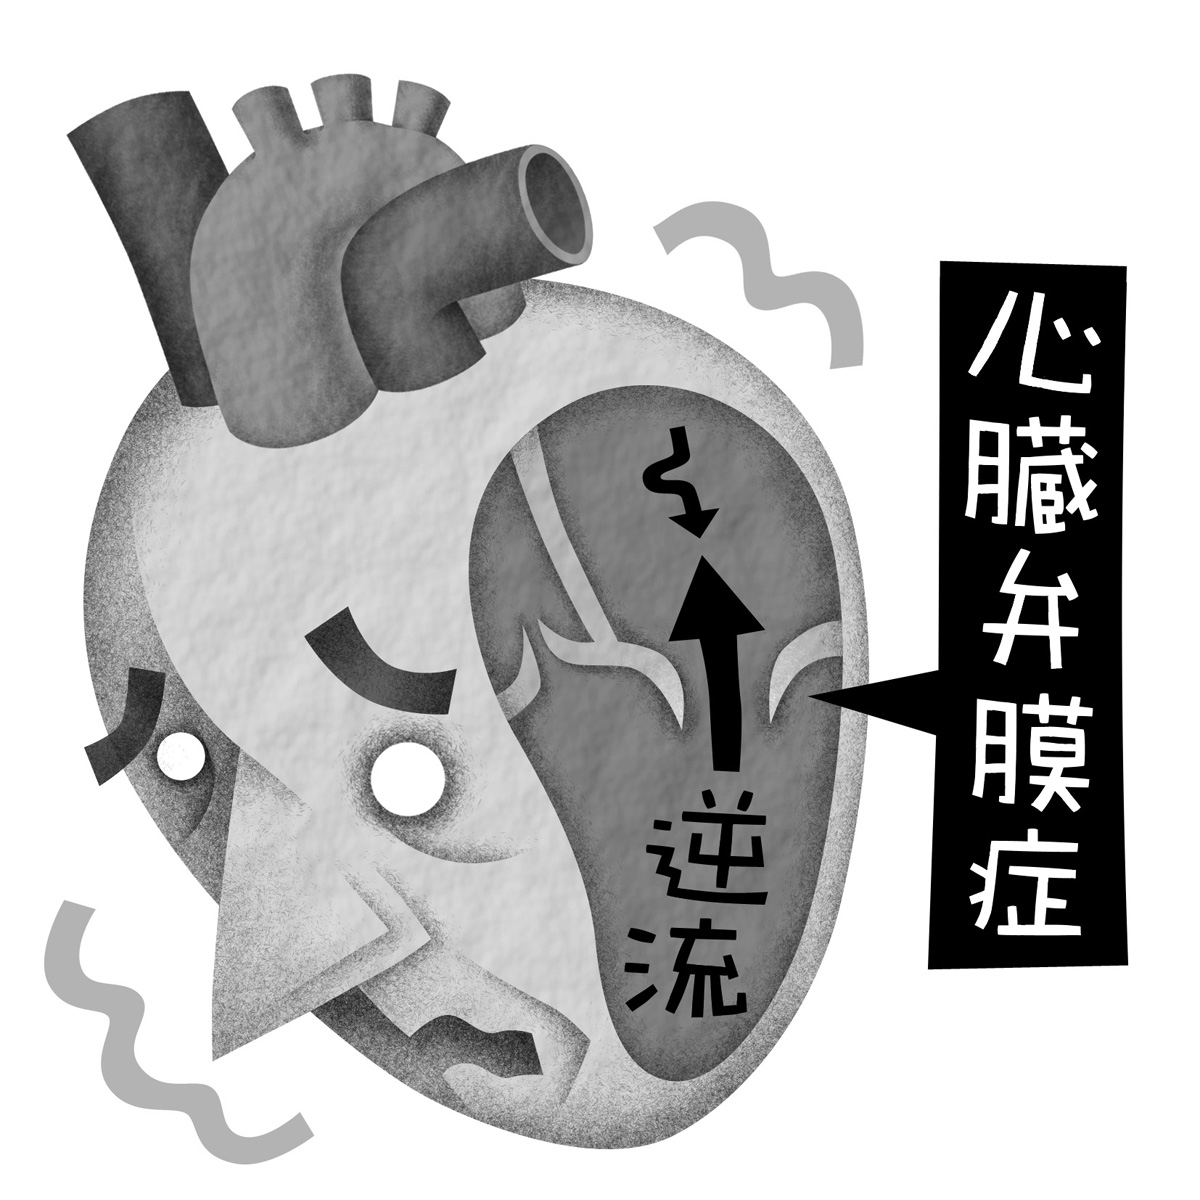 働き盛りの人の心臓弁膜症に手術法「3D-MICS」が普及